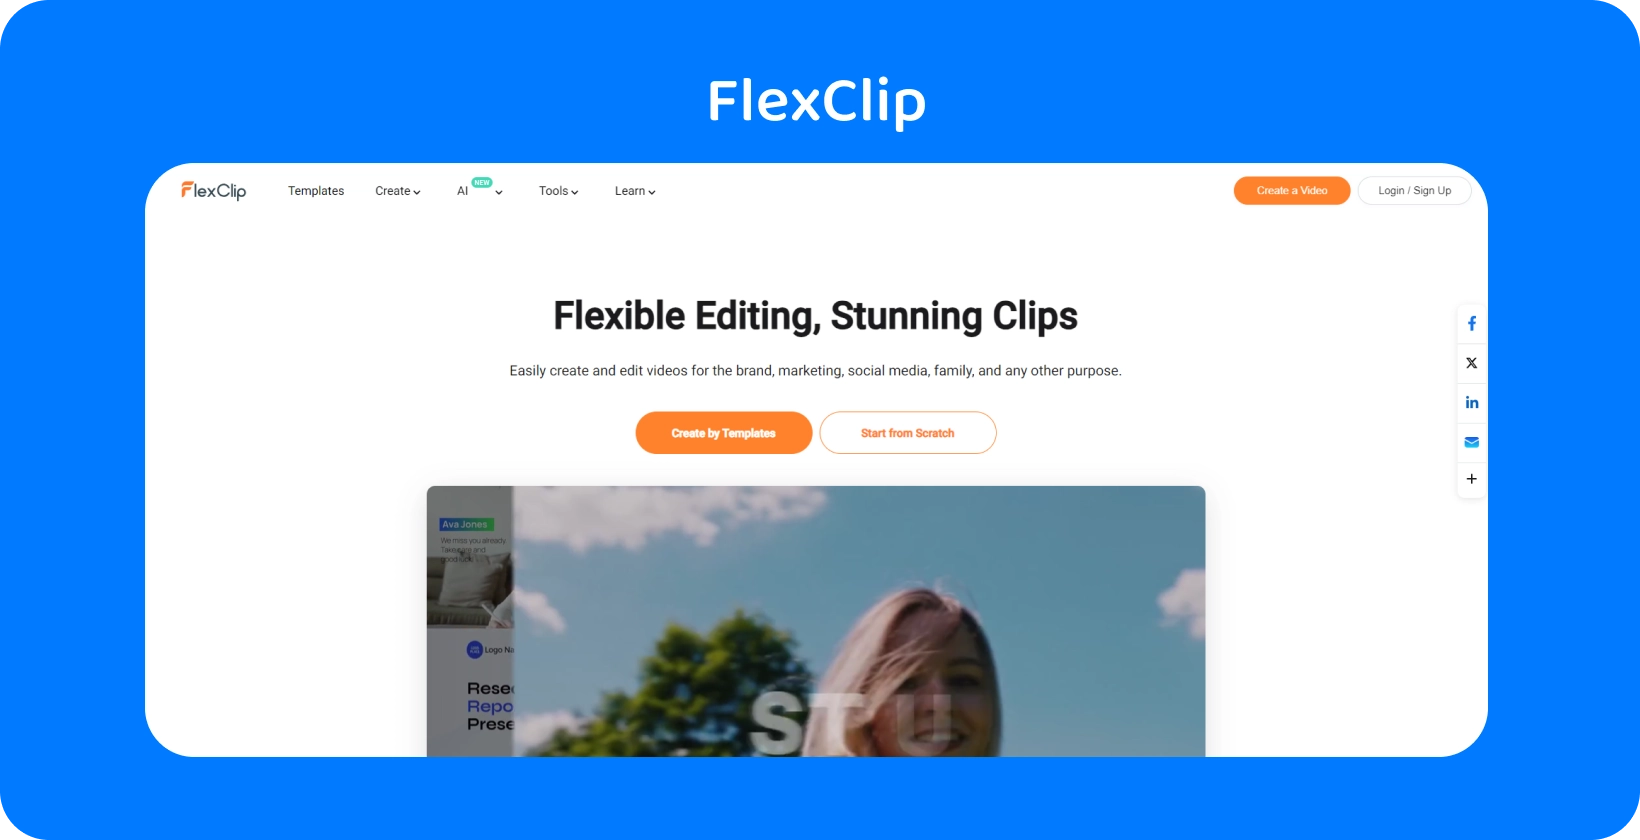 L’interface Text to Speech Video Maker de FlexClip montre un moyen simple et efficace de convertir du texte en parole AI réaliste.